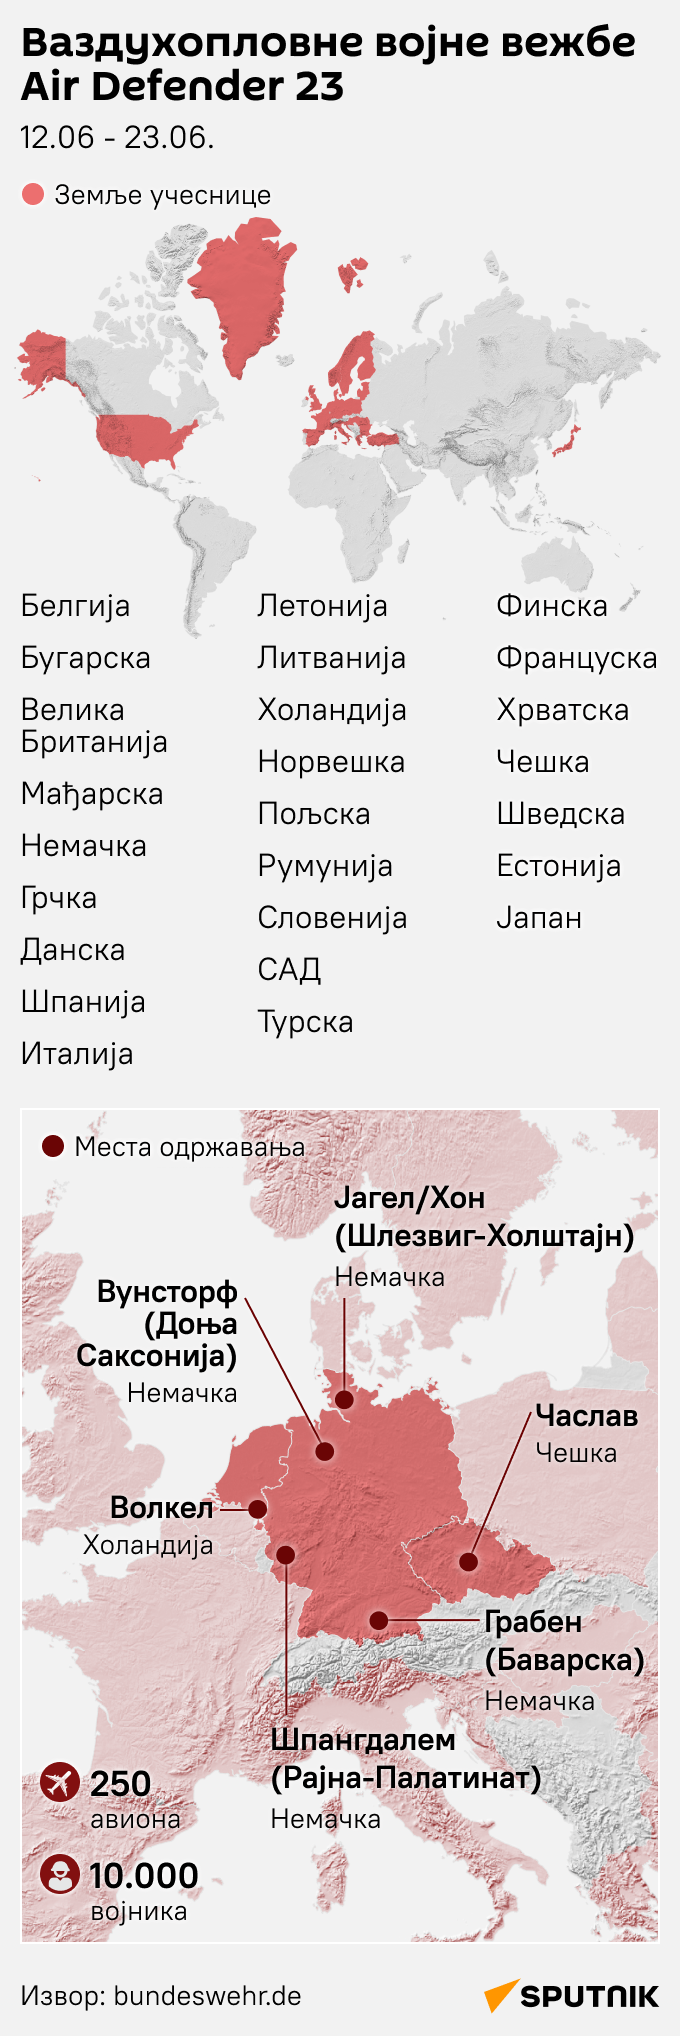 Инфографика  вежбе Ер дифендер 23 ЋИРИЛИЦА моб - Sputnik Србија